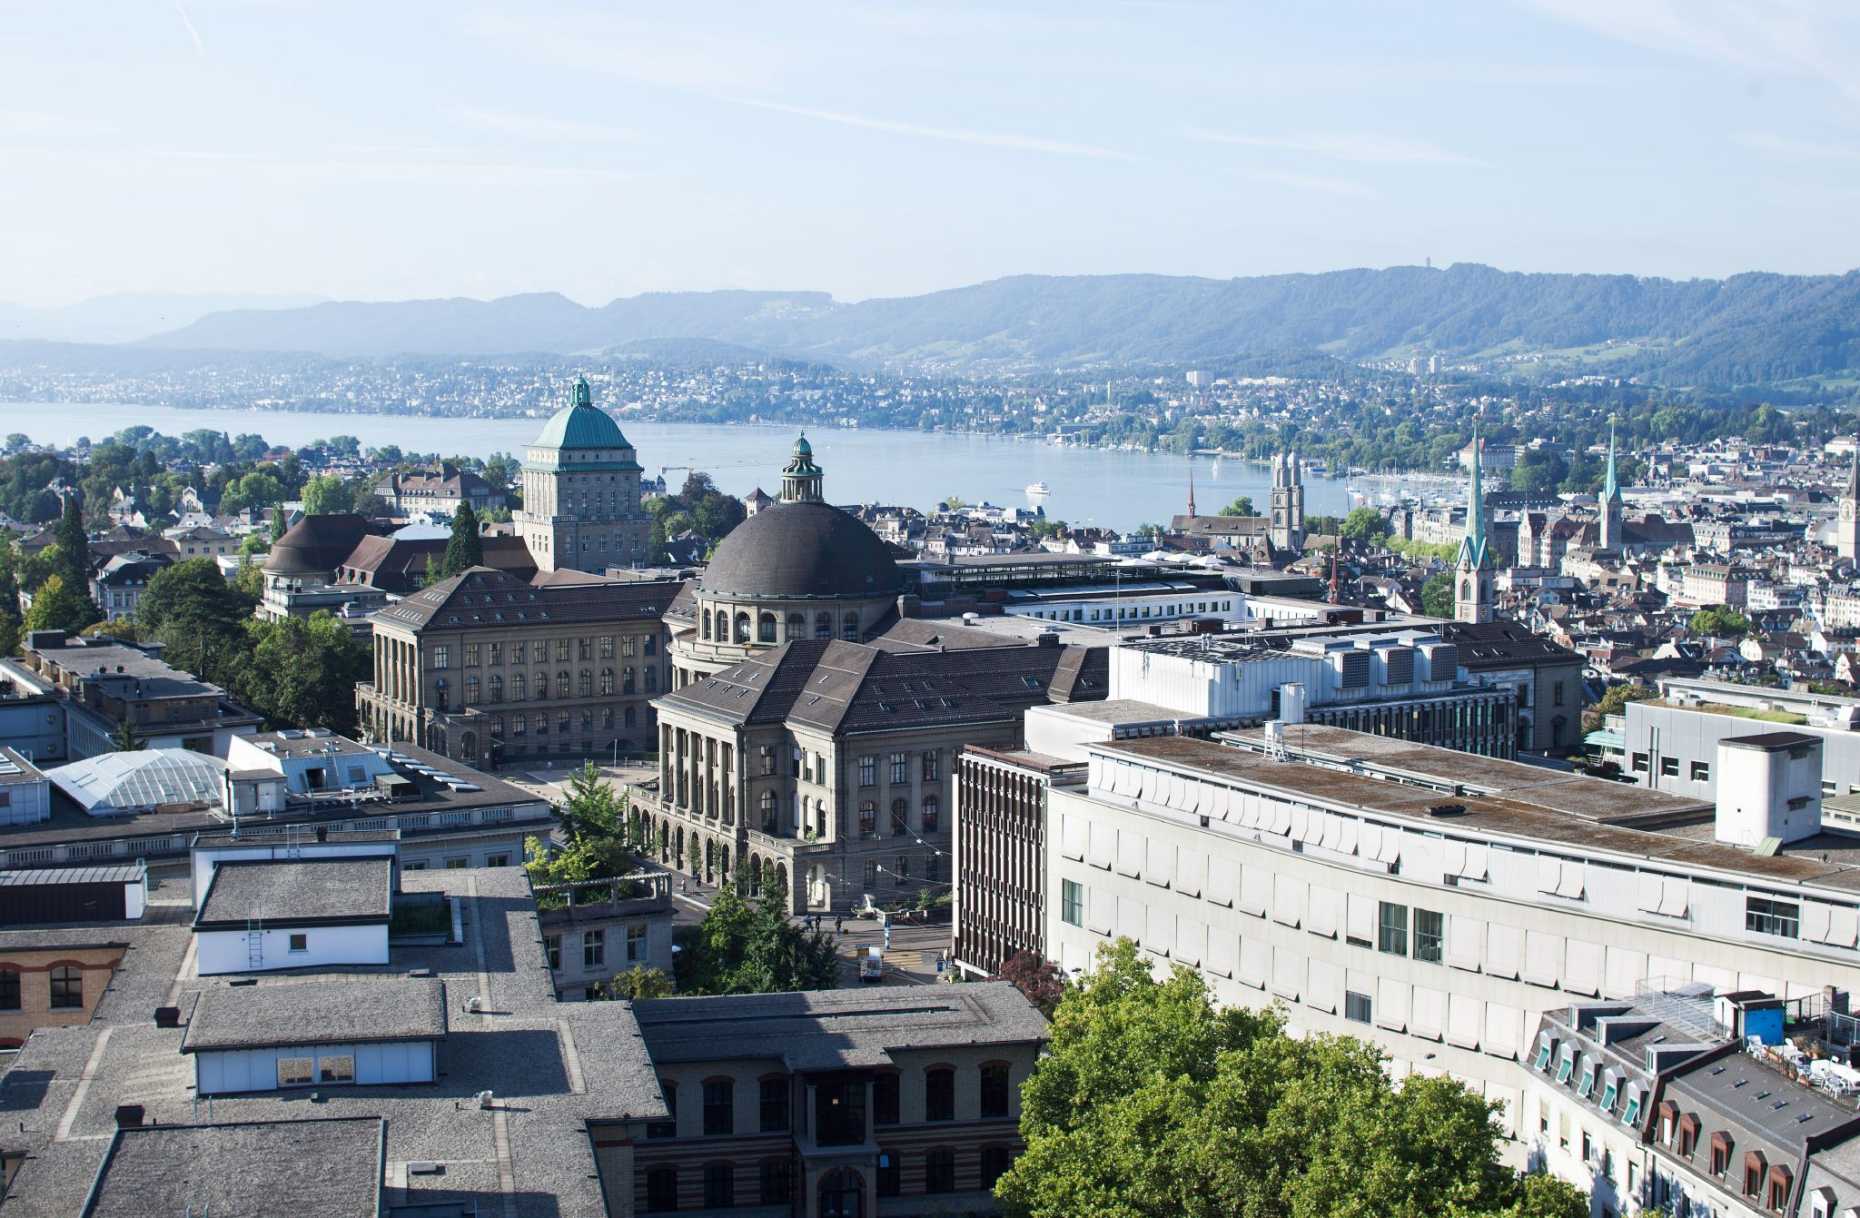 Enlarged view: ETH Zürich